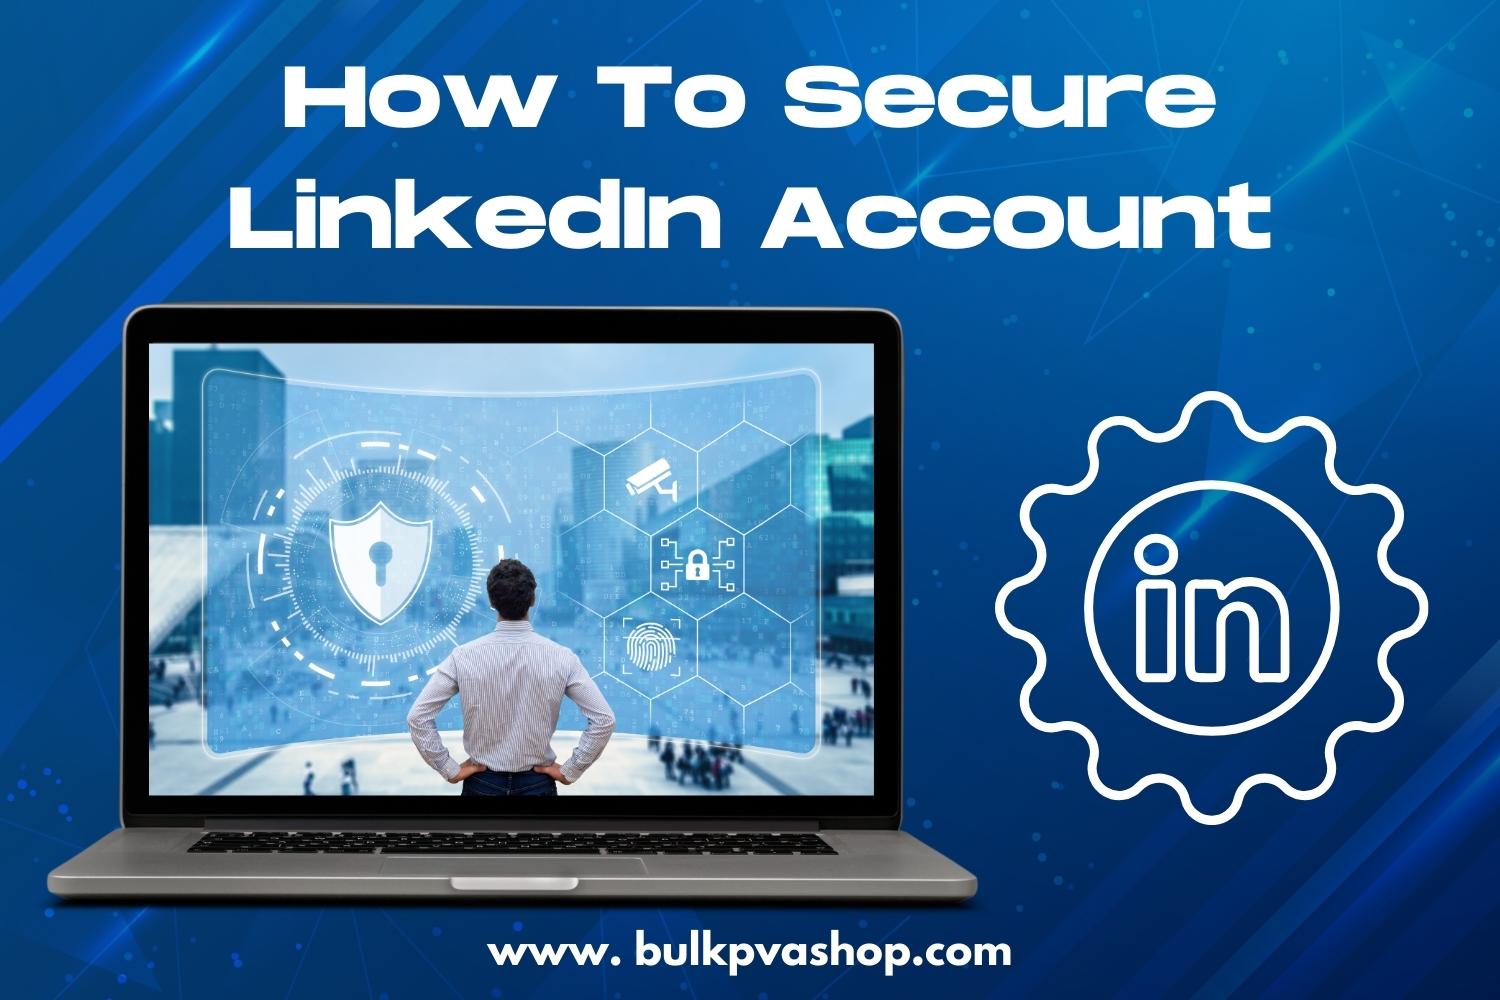 How To Secure LinkedIn Account As Per LinkedIn Rules